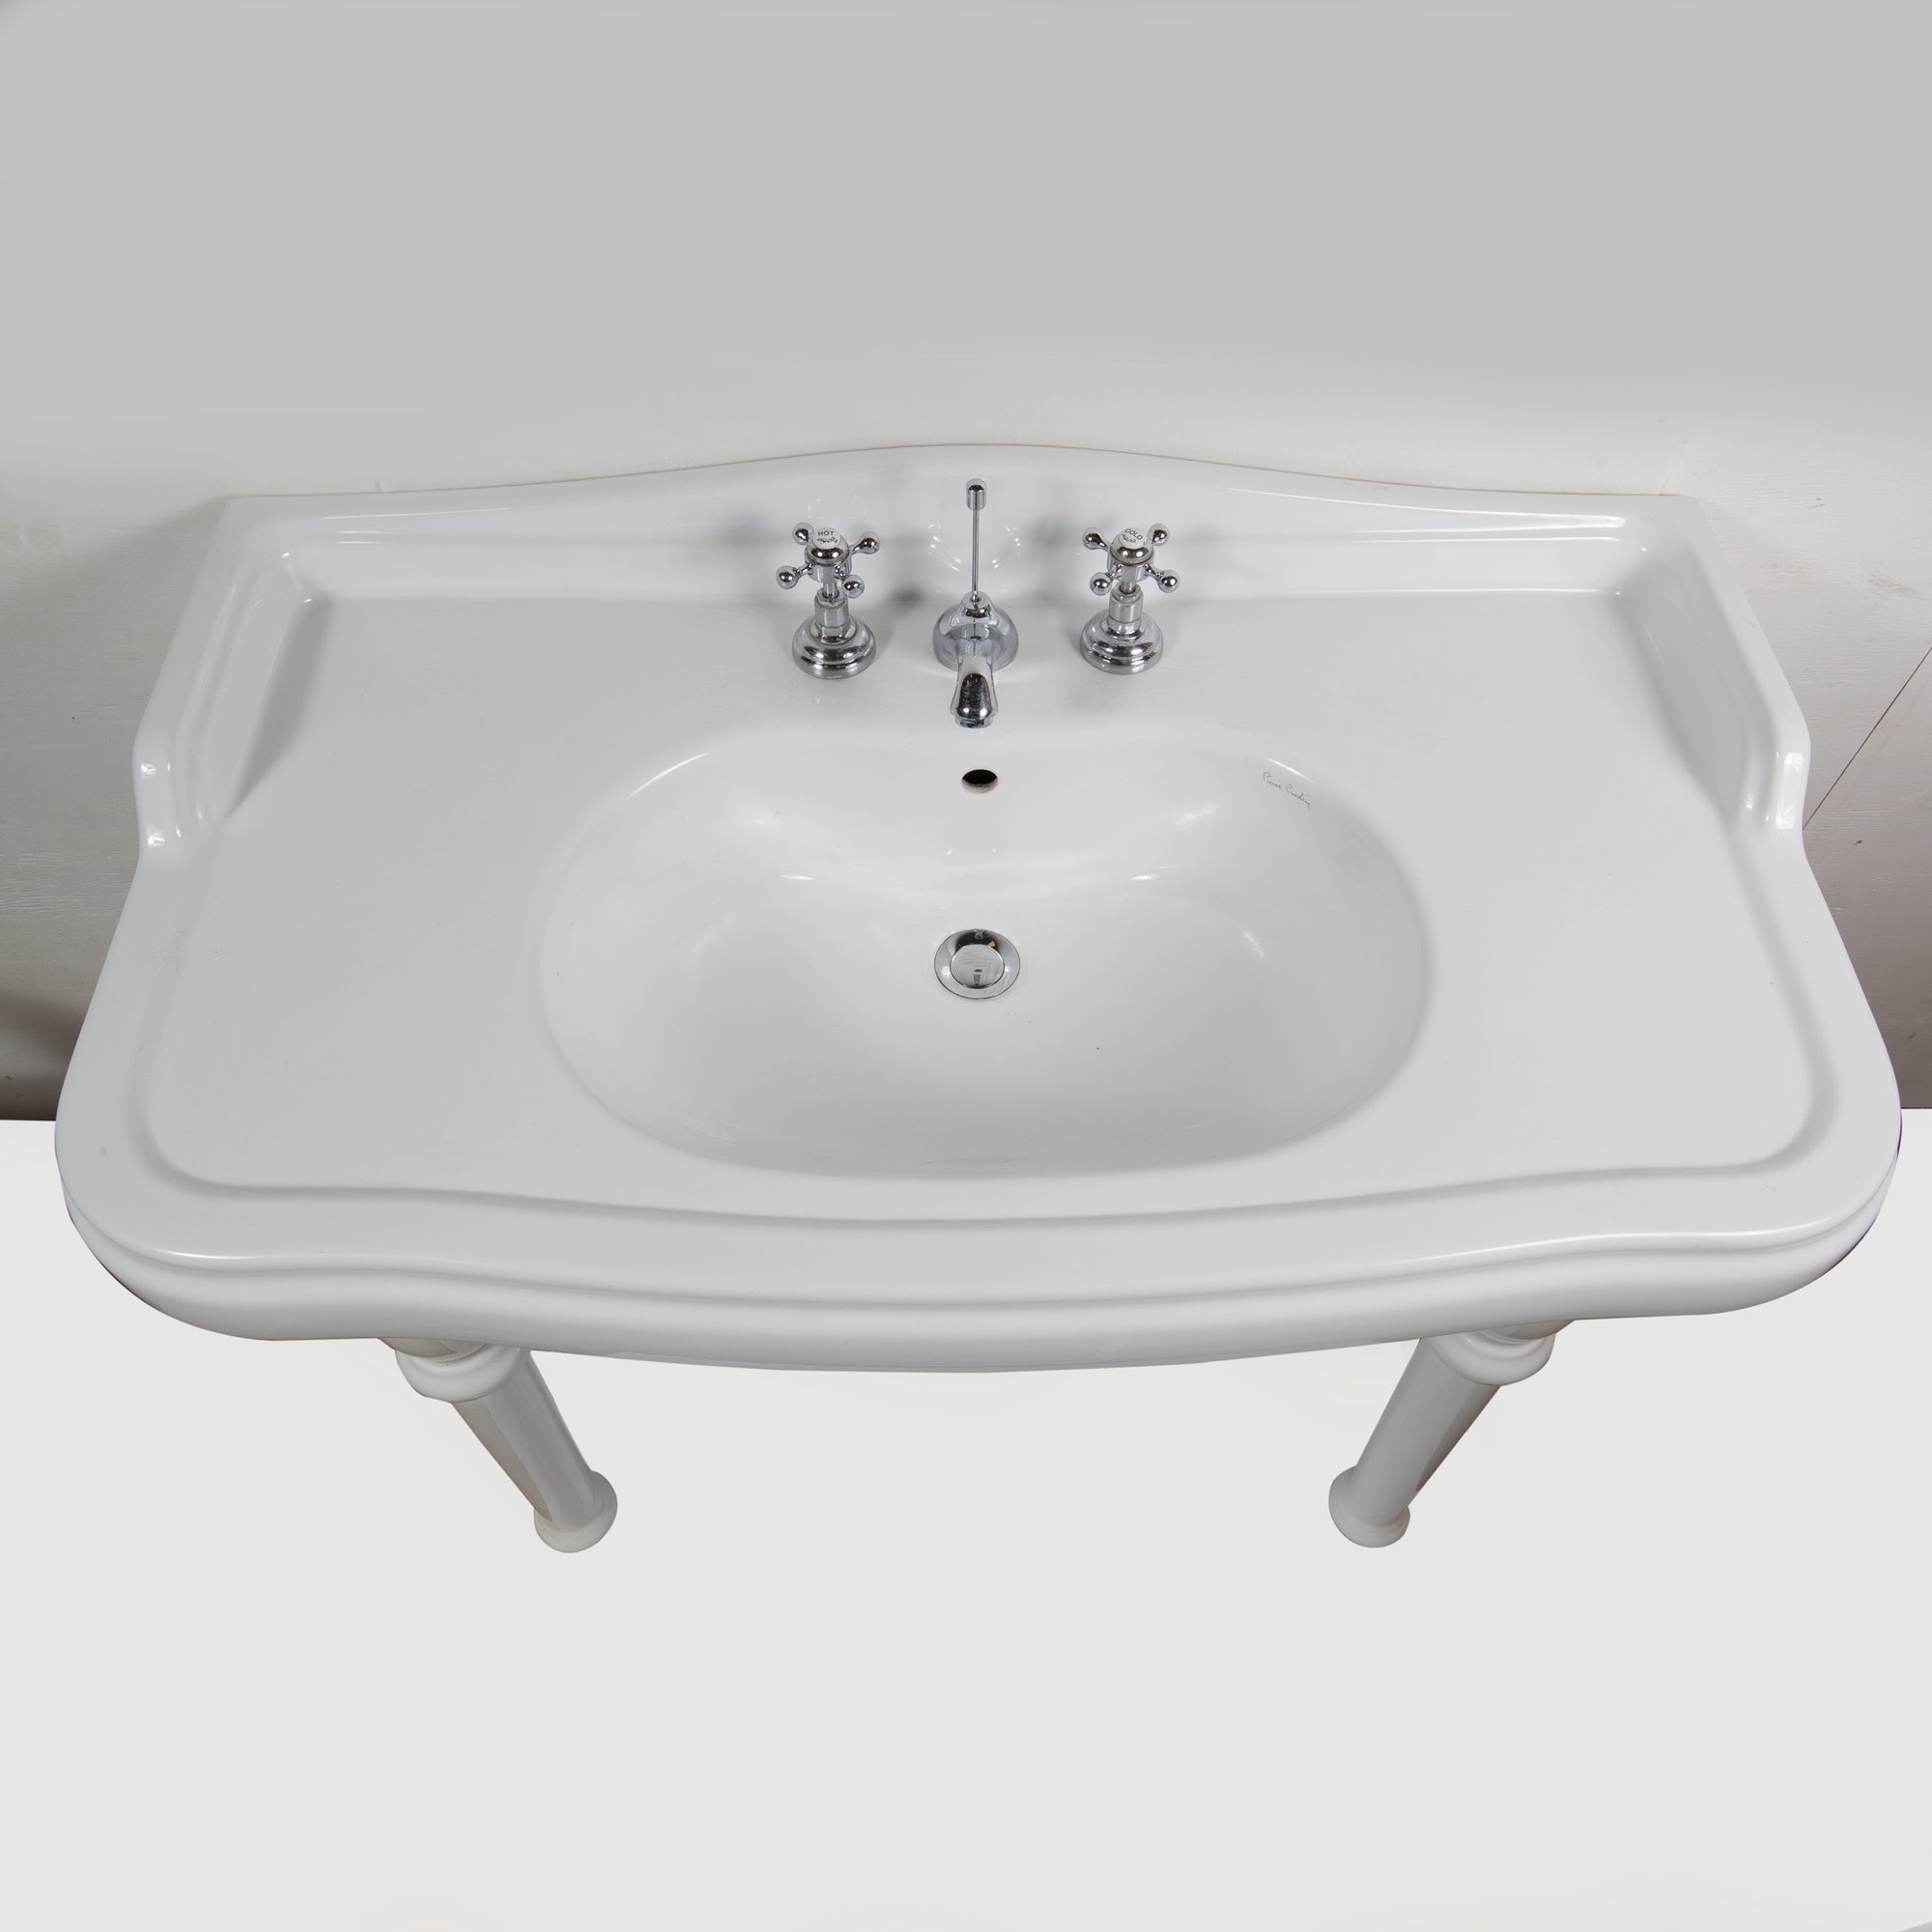 Reclaimed Pierre Cardin Porcelain Sink With Legs